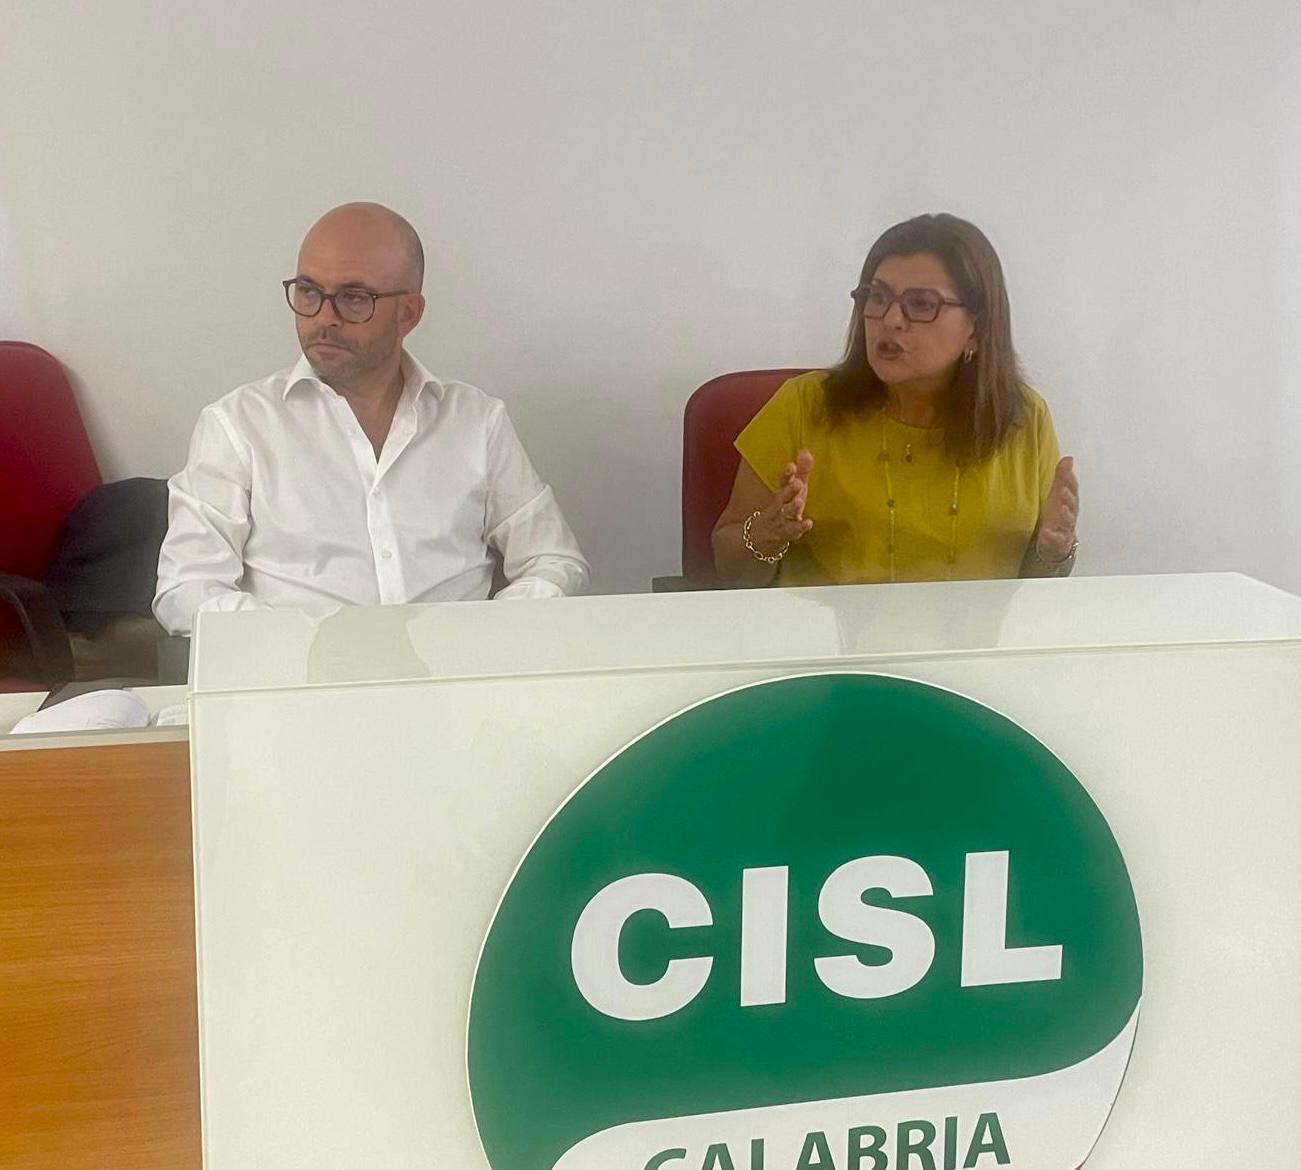 FAI Cisl e Cisl FP regionali incontrano Rsa e lavoratori della sorveglianza idraulica, confronto su temi contrattuali.